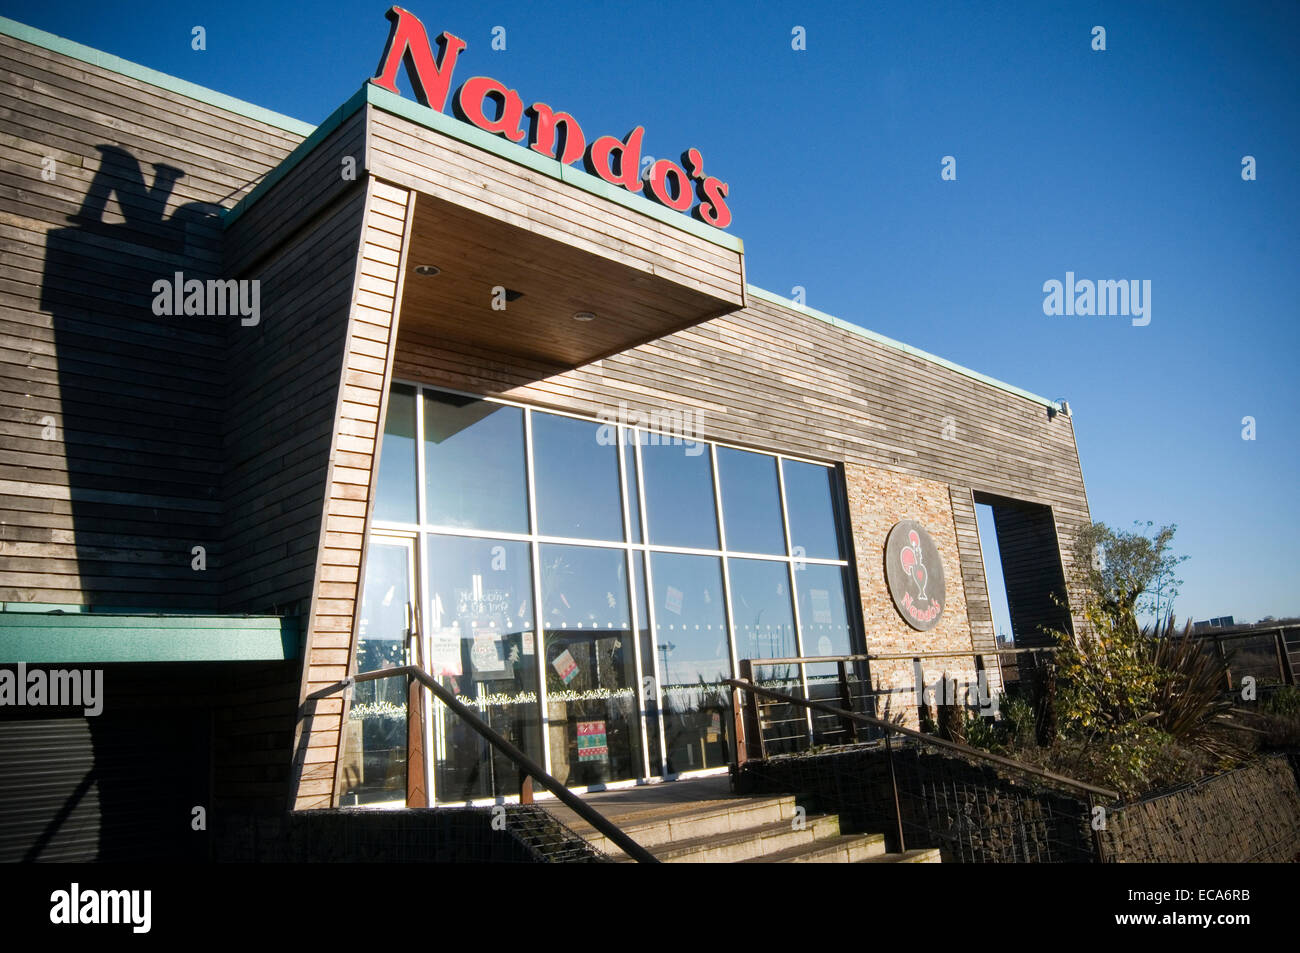 Nando's Nandos Portuguese chicken restaurant restaurants chain theme chained Stock Photo